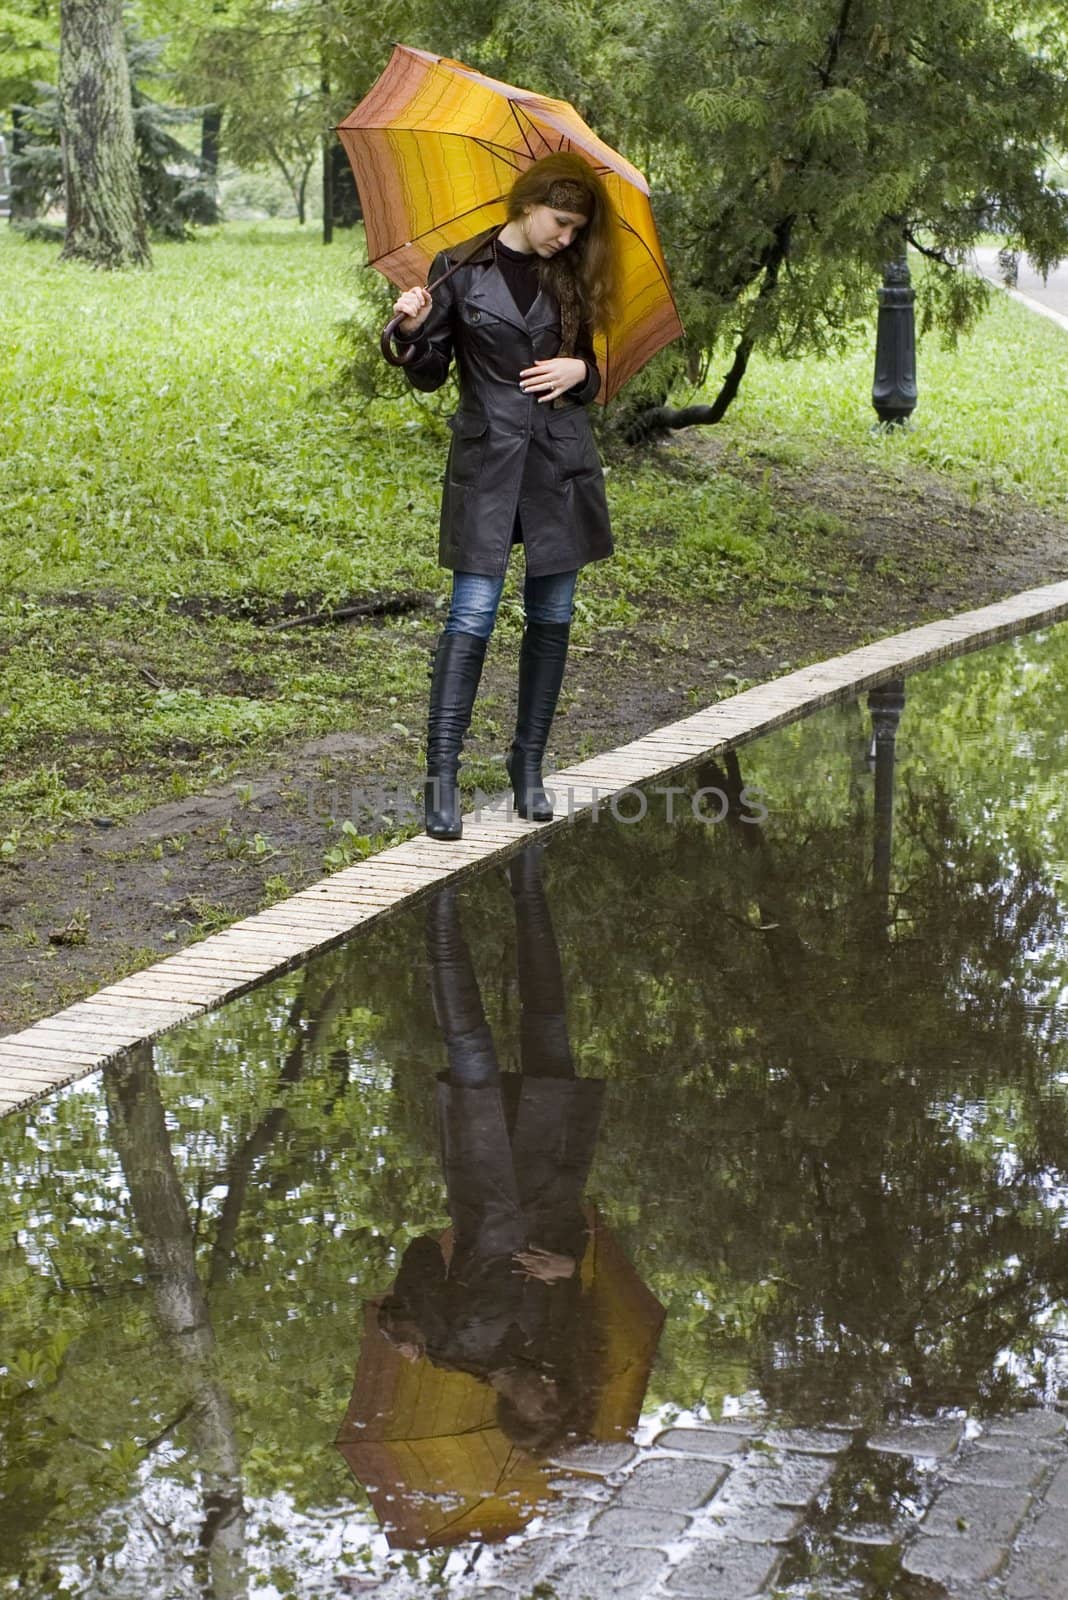 girl under a umbrella. Reflection